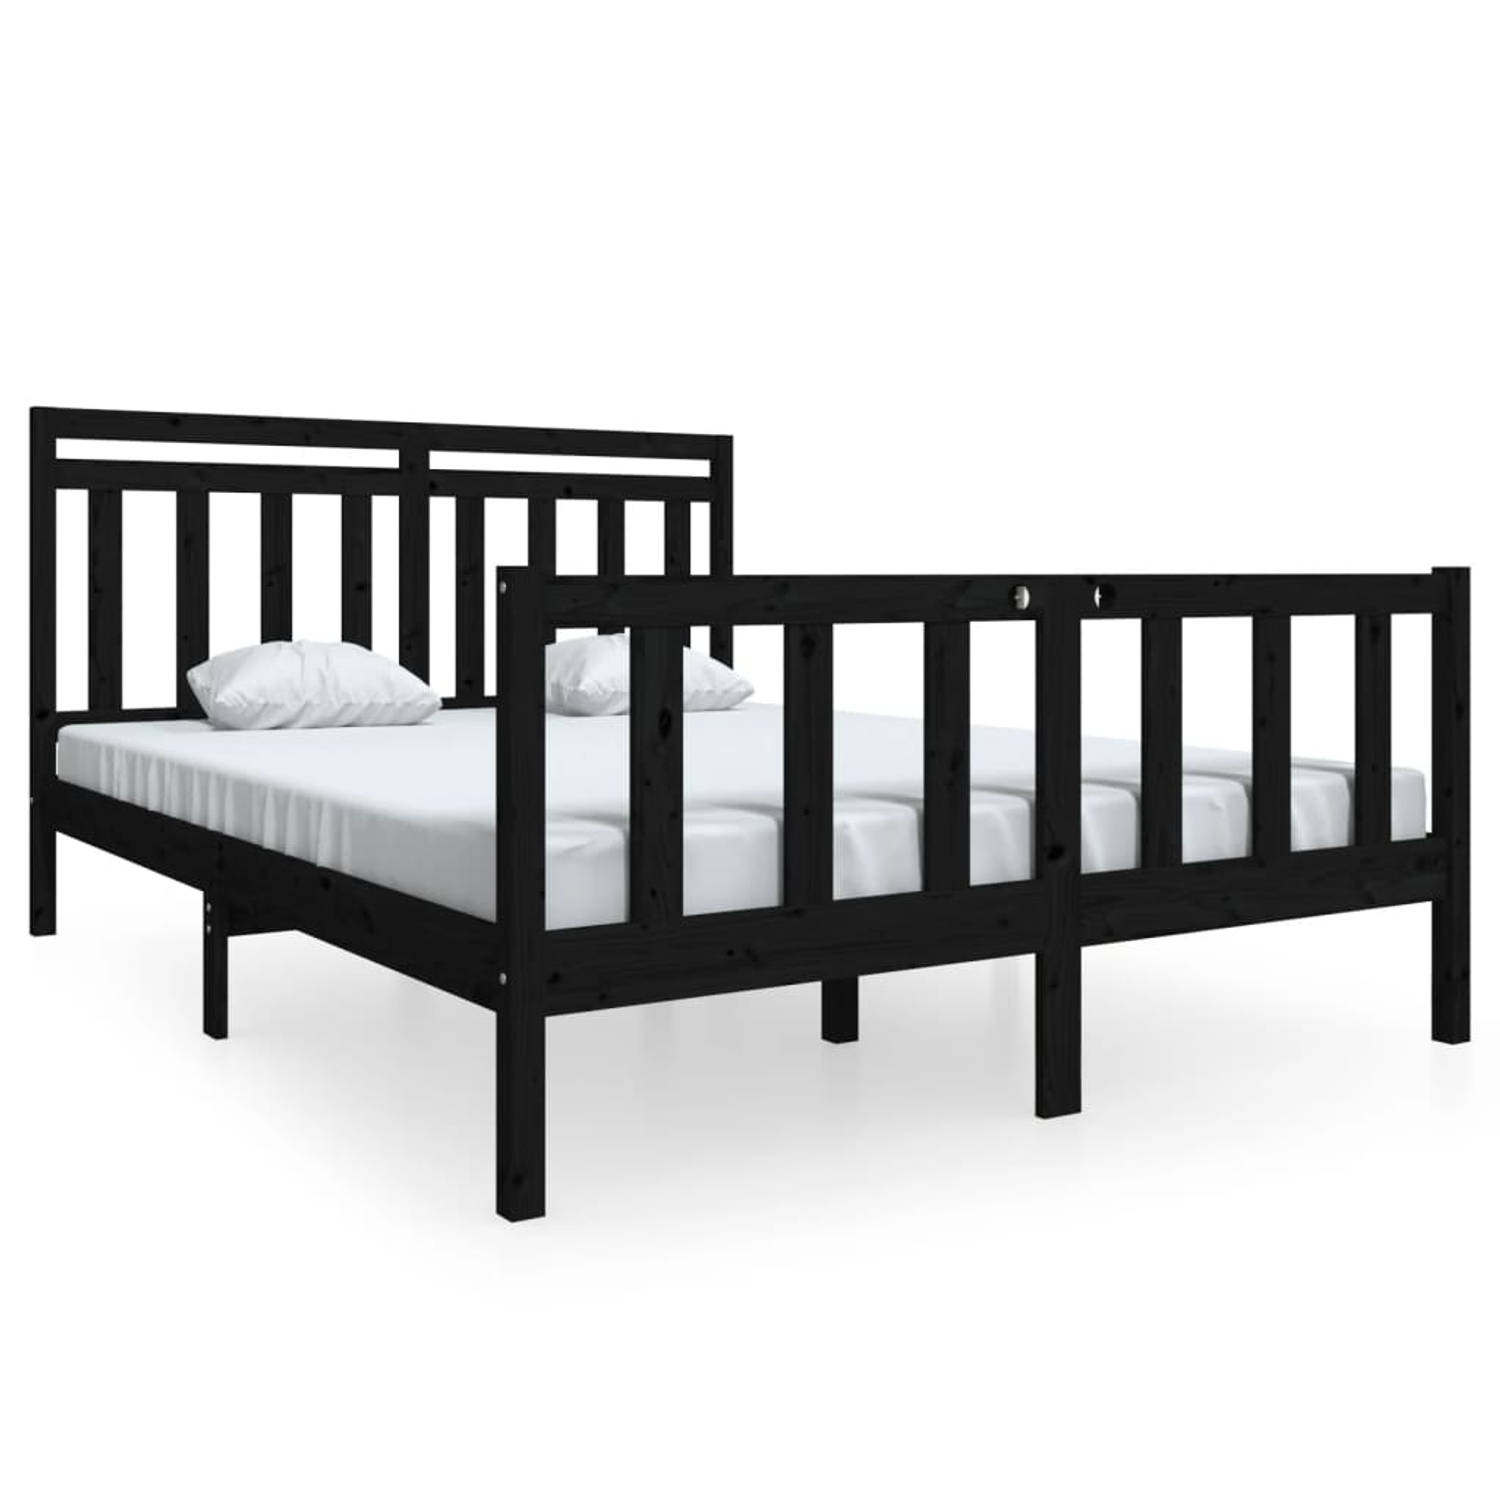 The Living Store Bedframe massief hout zwart 150x200 cm 5FT King Size - Bedframe - Bedframes - Tweepersoonsbed - Bed - Bedombouw - Dubbel Bed - Frame - Bed Frame - Ledikant - Bedfr